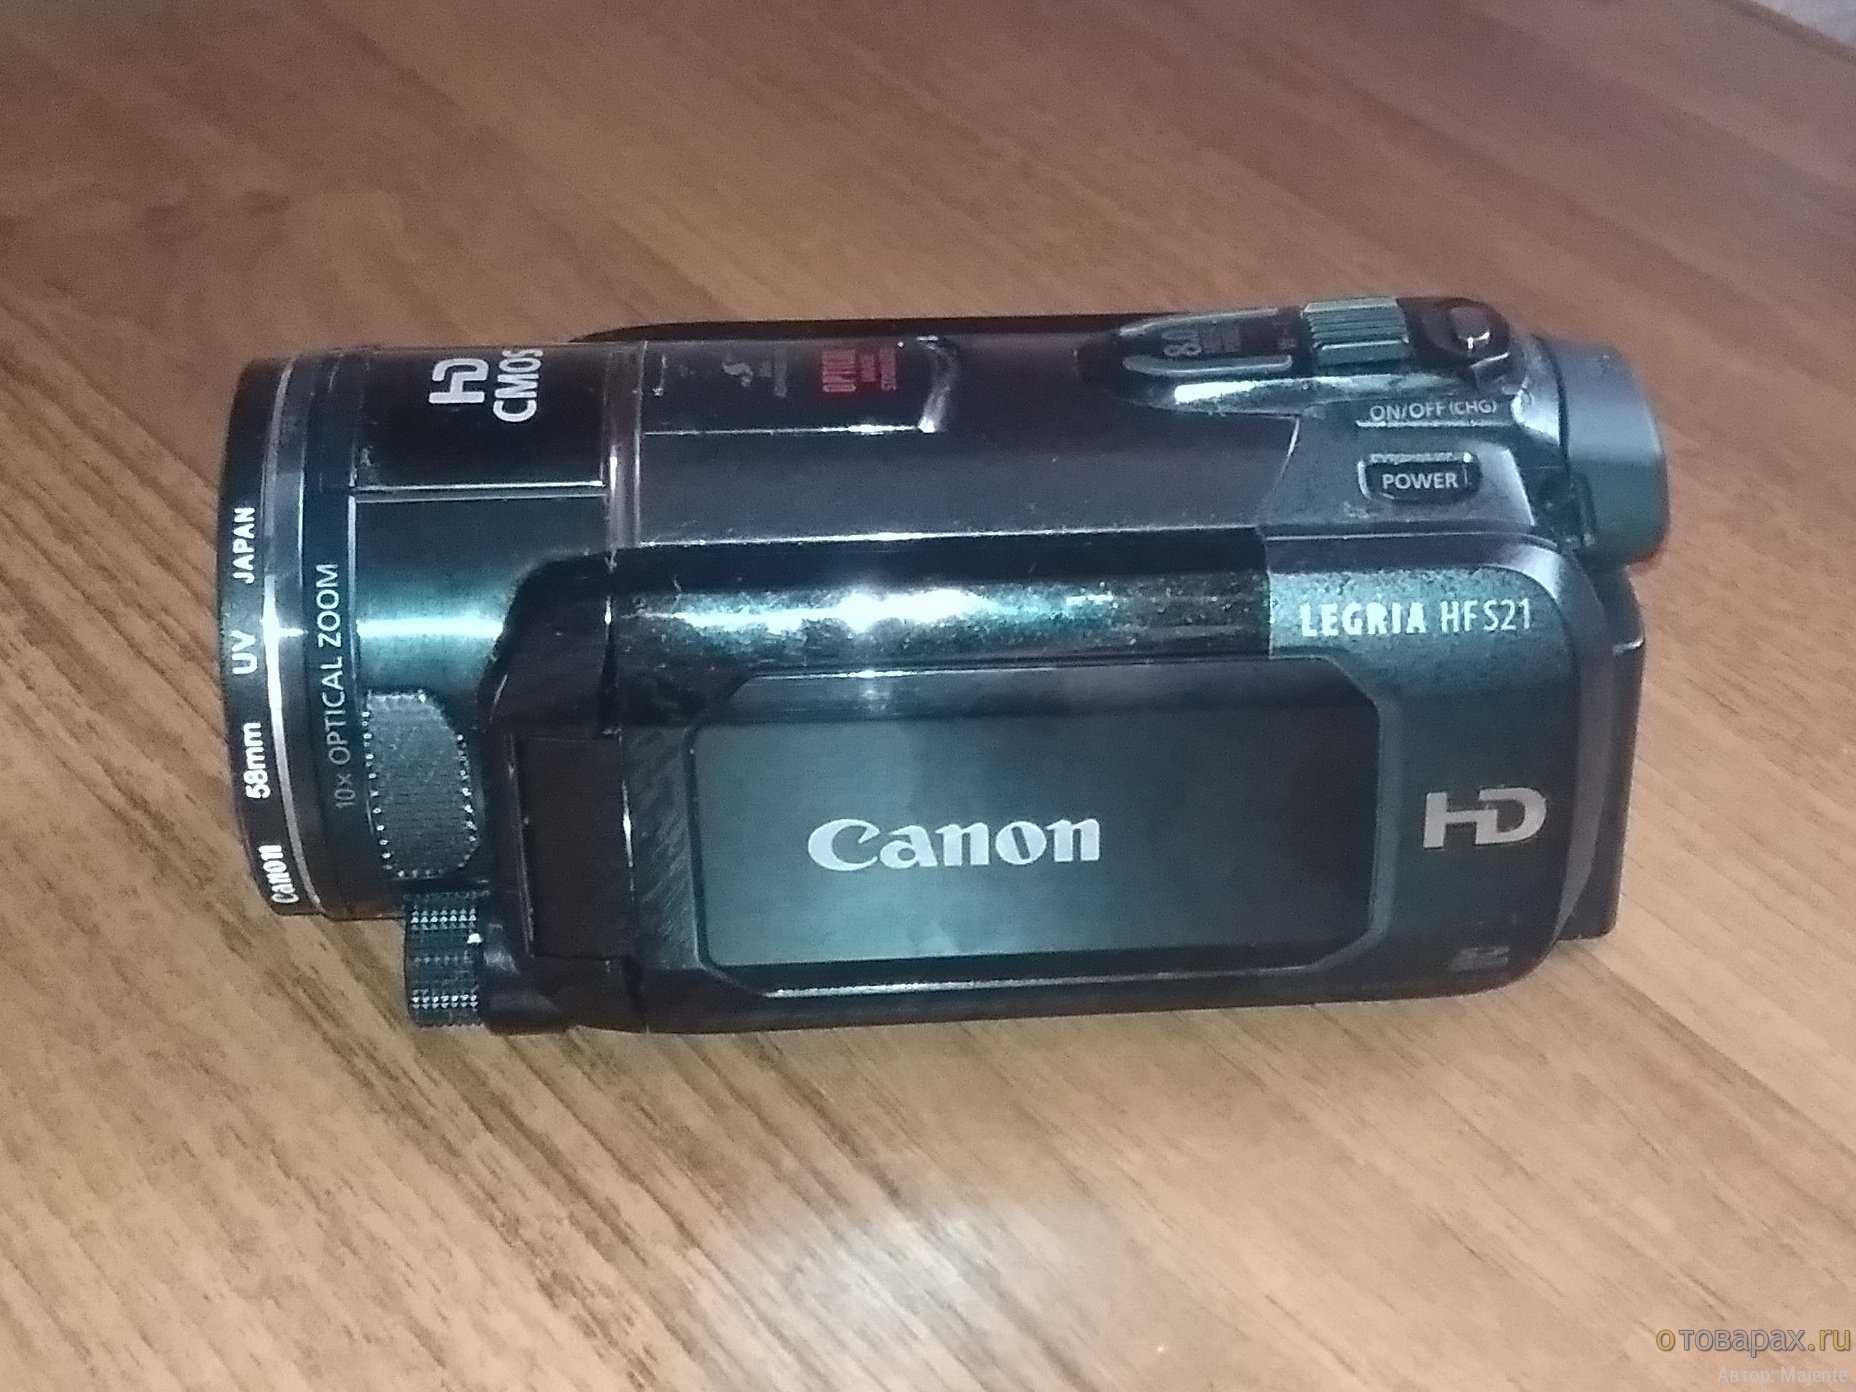 Видеокамера Canon Legria HF S21 - подробные характеристики обзоры видео фото Цены в интернет-магазинах где можно купить видеокамеру Canon Legria HF S21